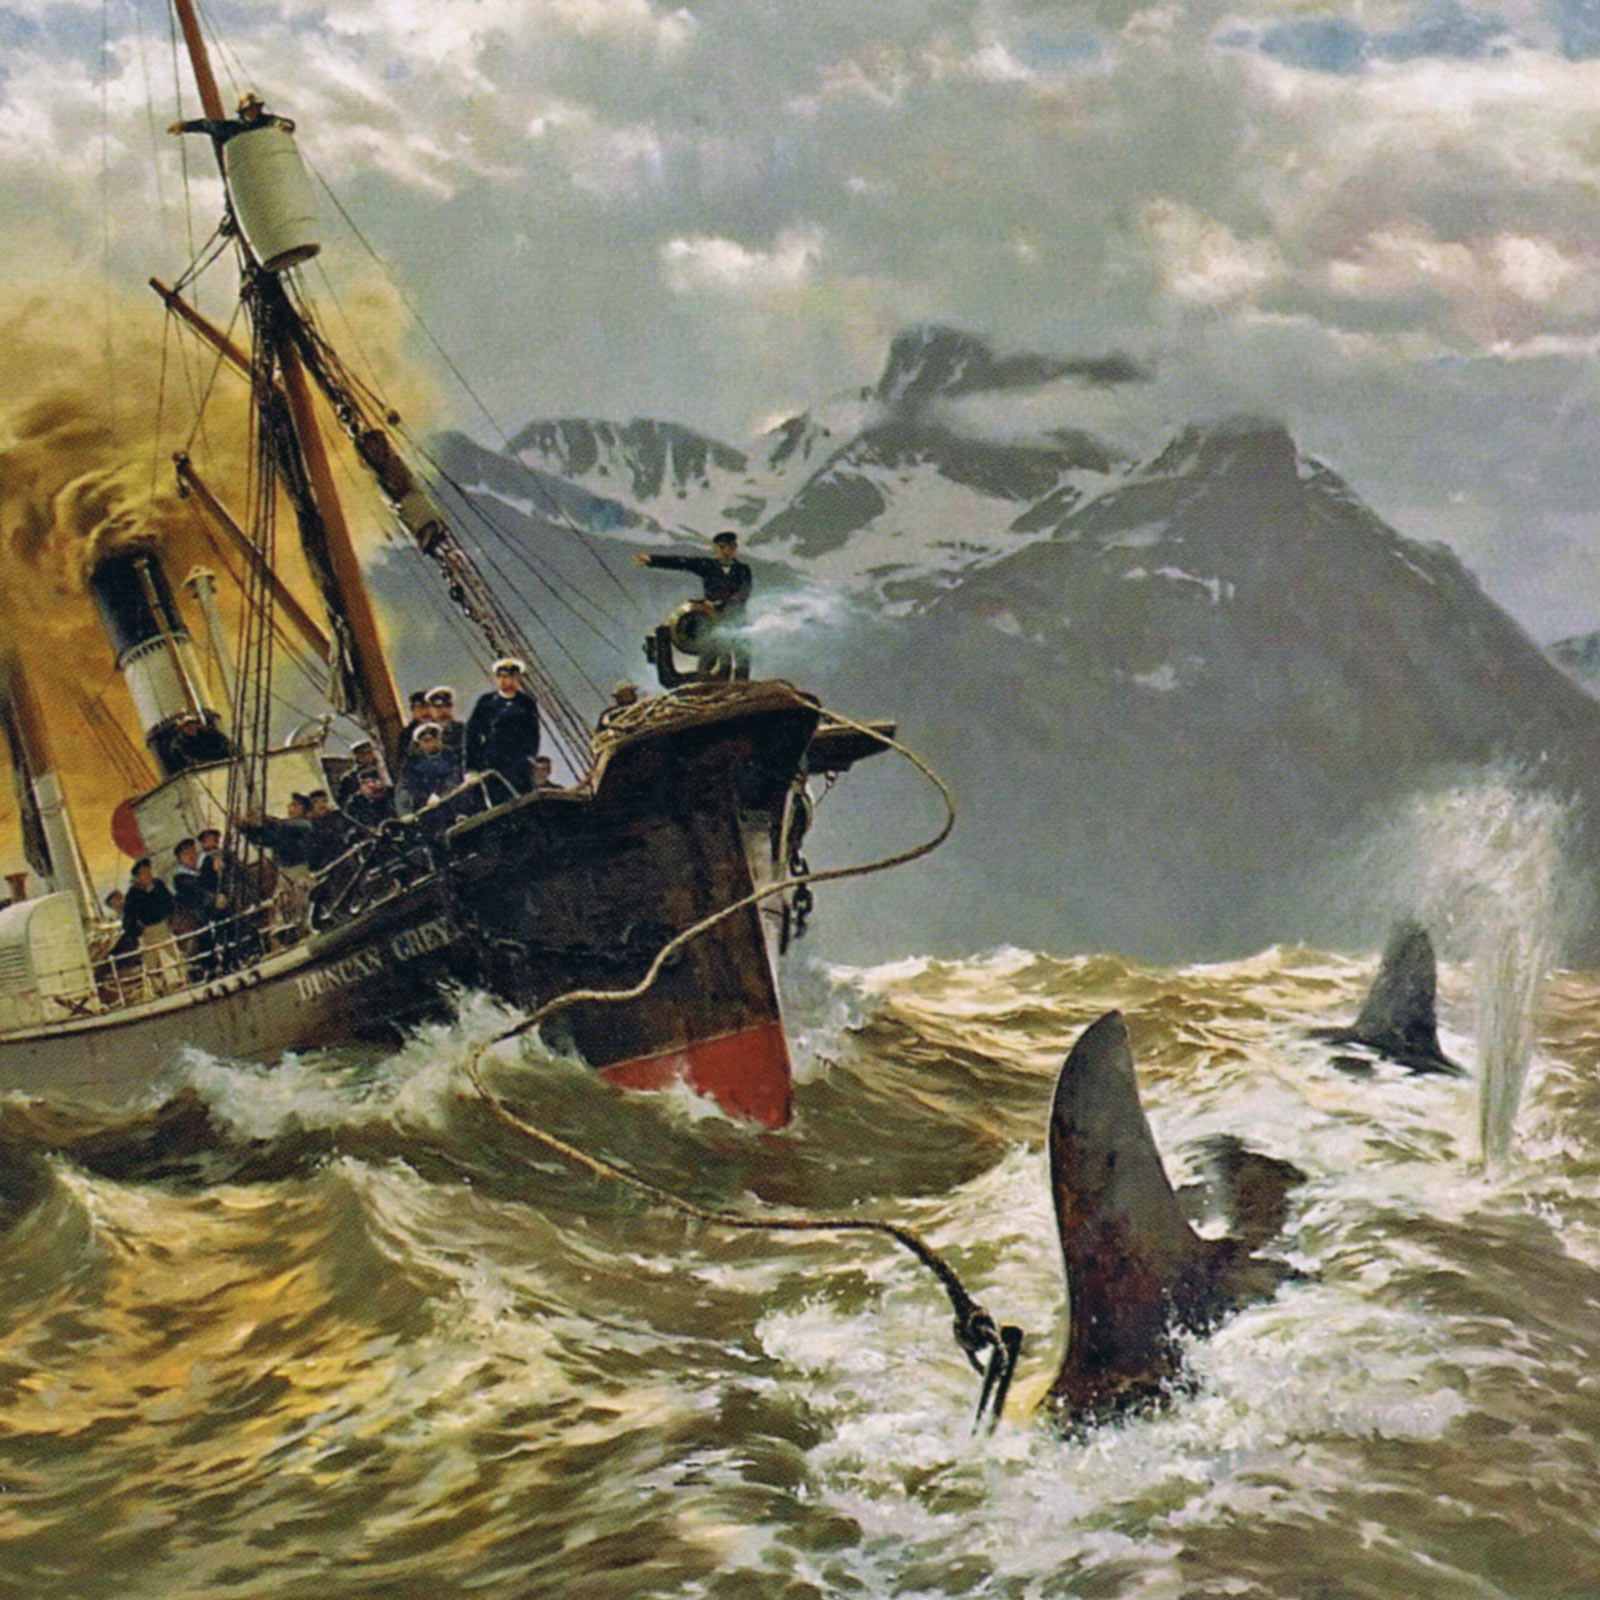 Ein Schiff auf Walfang in wildem Wasser. Markenkommunikation von Gloria Mundi.